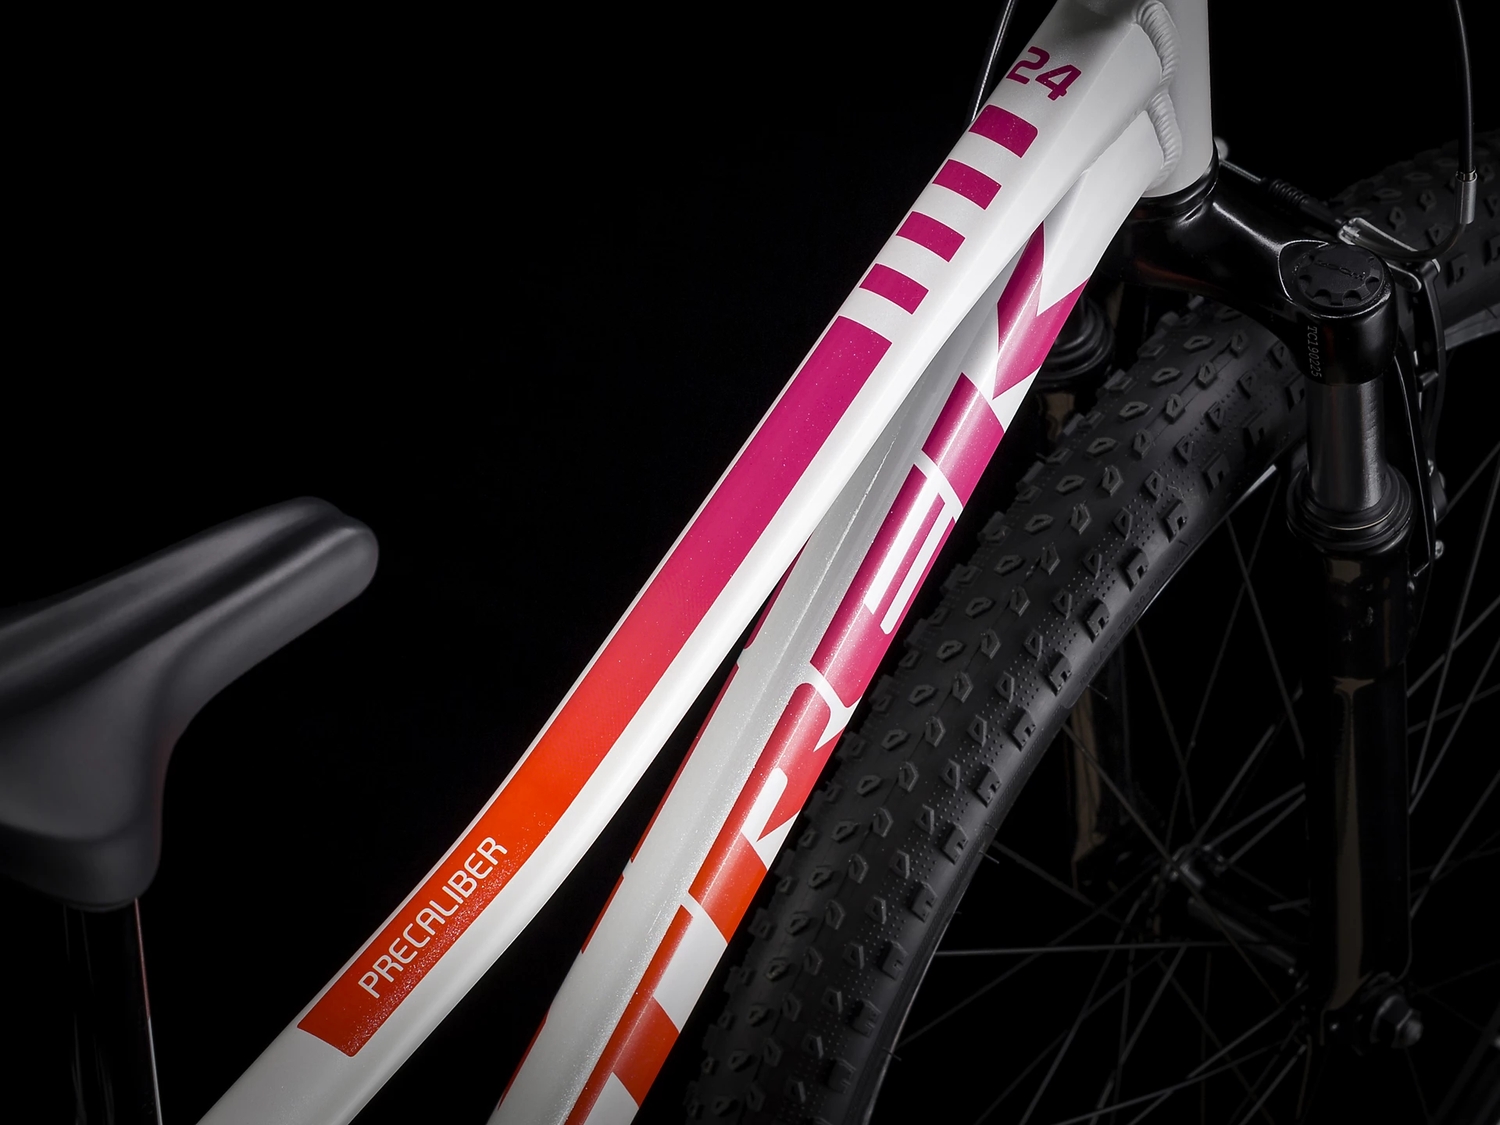 Подростковый велосипед Trek Precaliber 24 8Sp Girls Susp, год 2022, цвет Красный